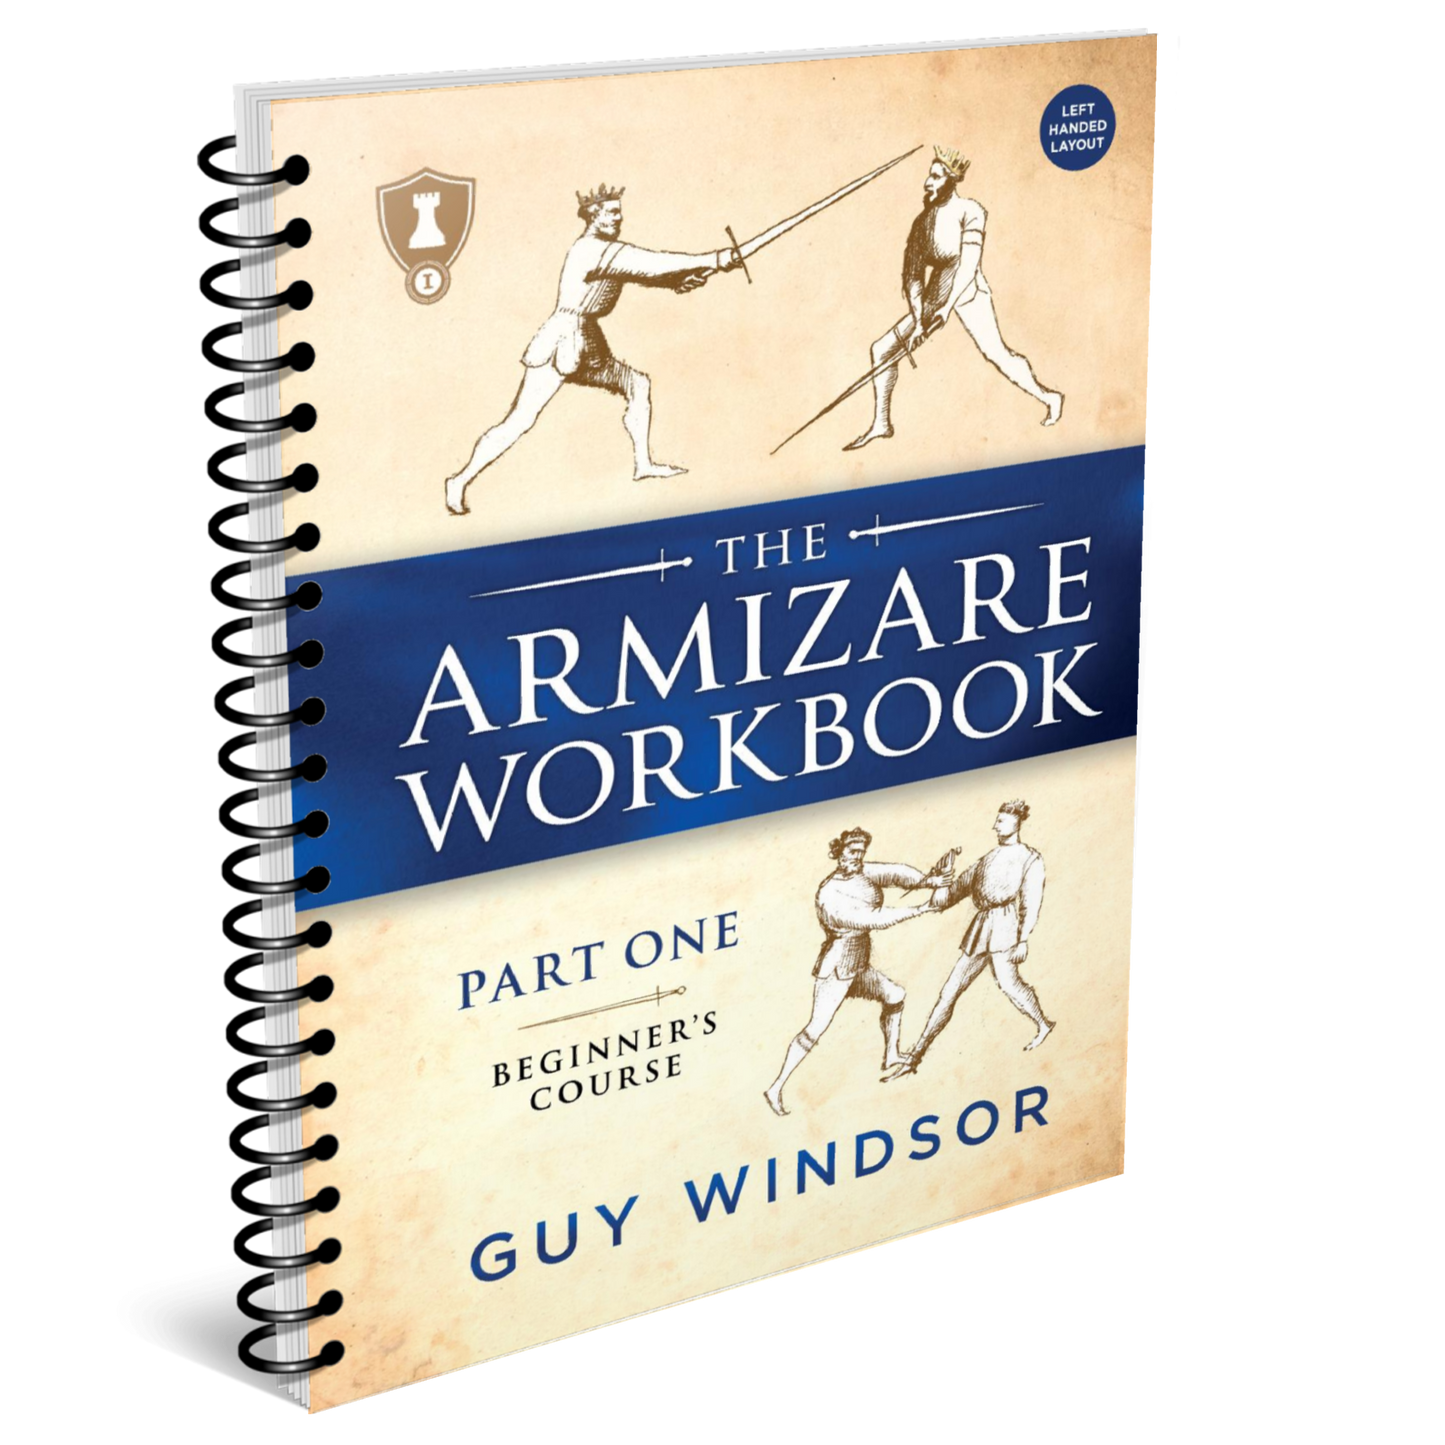 The Armizare Workbook: Part One: The Beginner's Course, Left-Handed Version (spiral bound workbook)